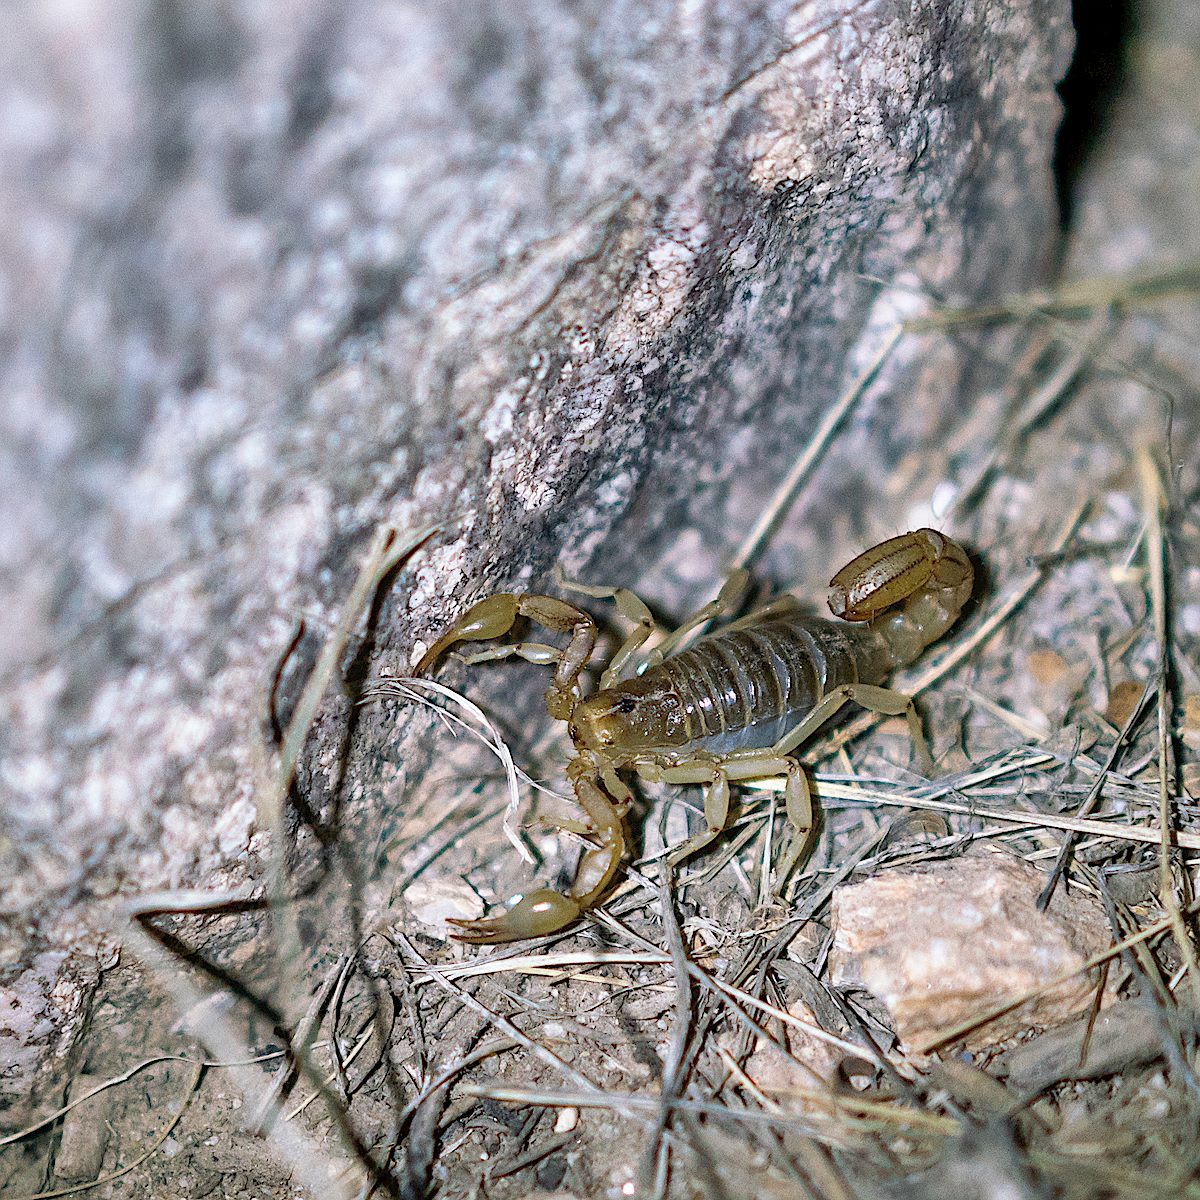 Scorpion. May 2018.